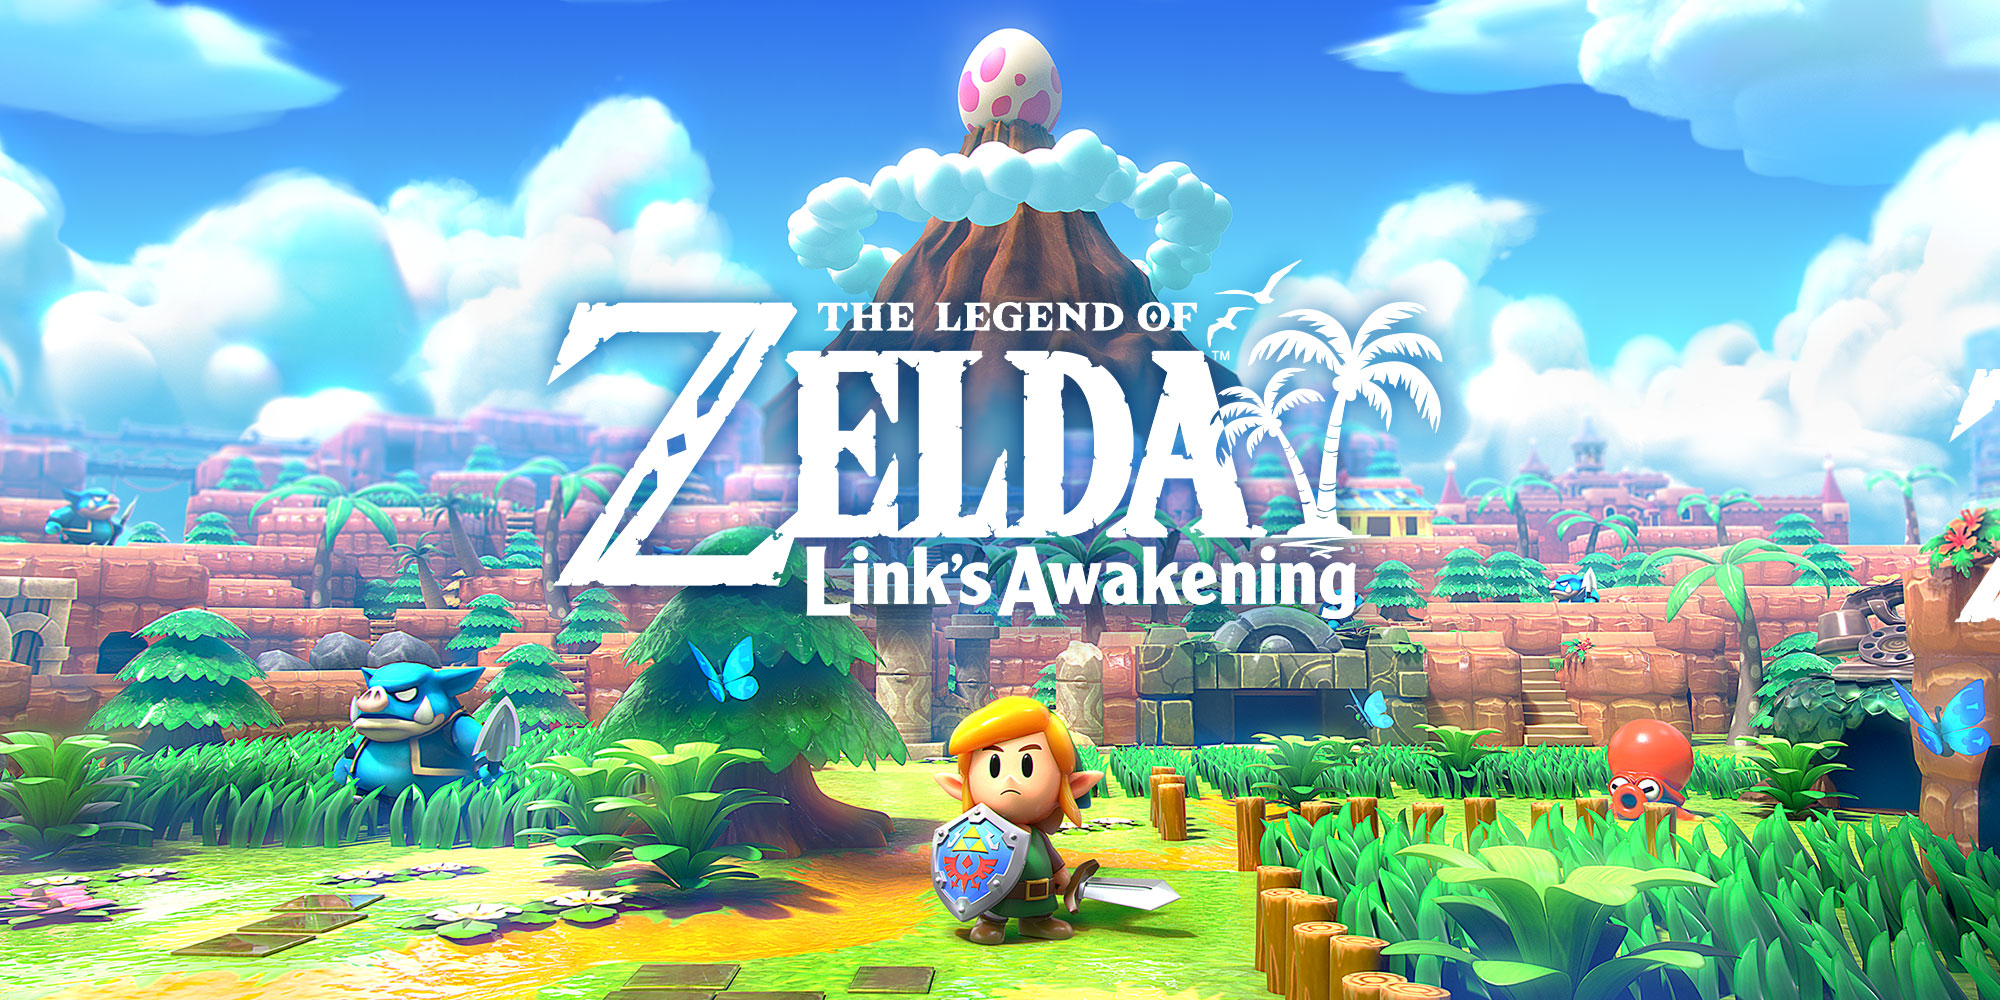 Producer Eiji Aonuma doet meer informatie over The Legend of Zelda: Link's Awakening uit de doeken!